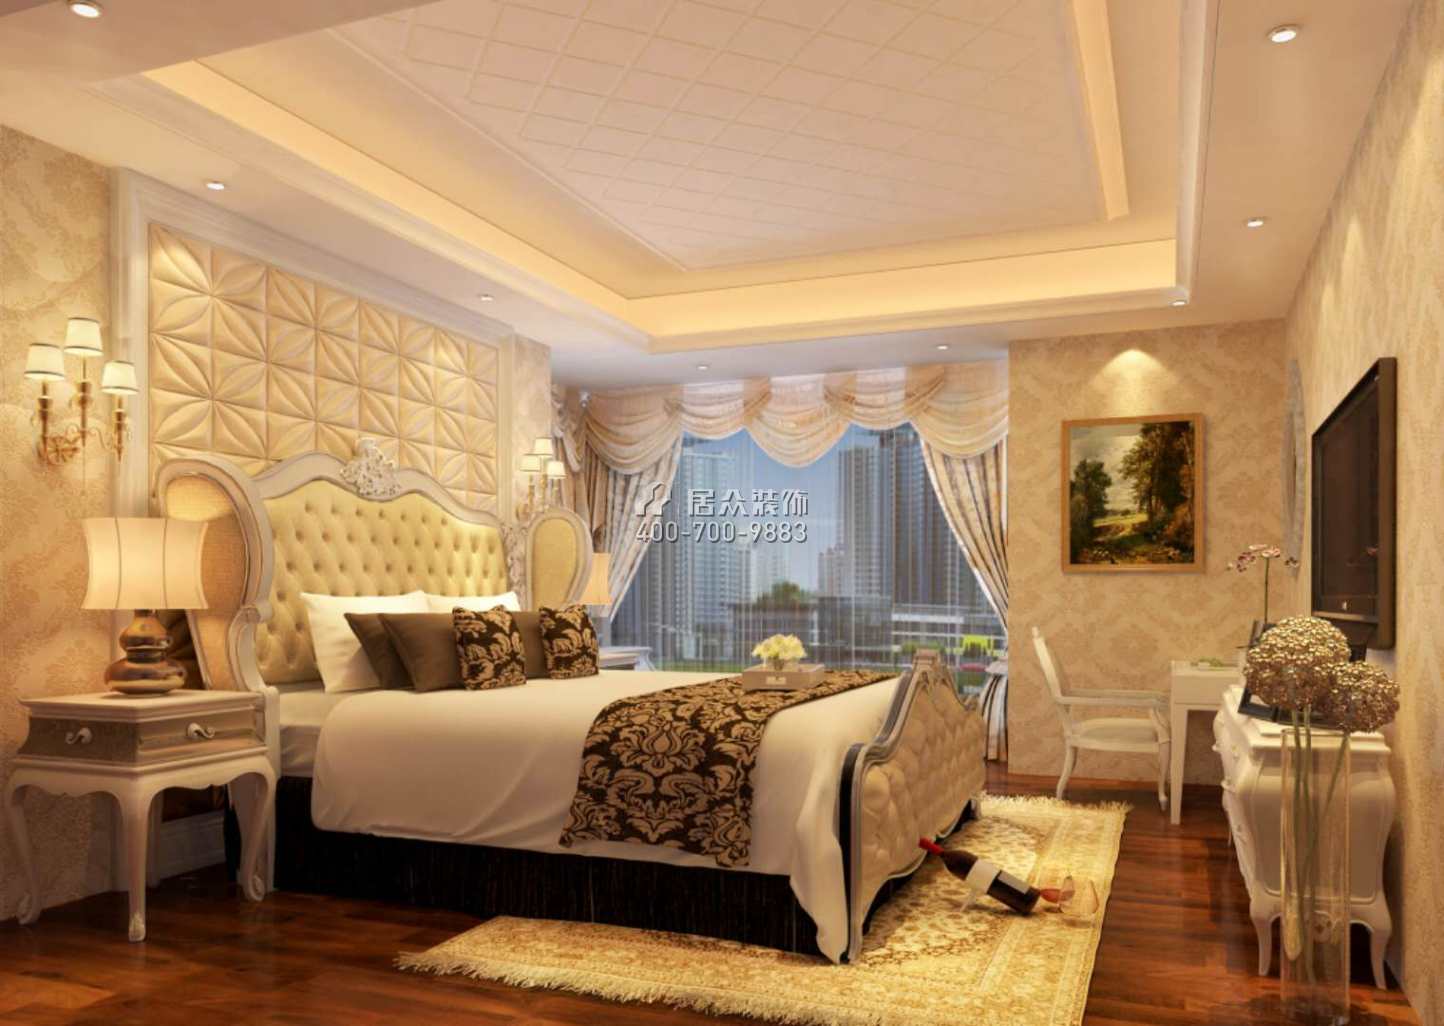 鳳城明珠150平方米歐式風格平層戶型臥室裝修效果圖